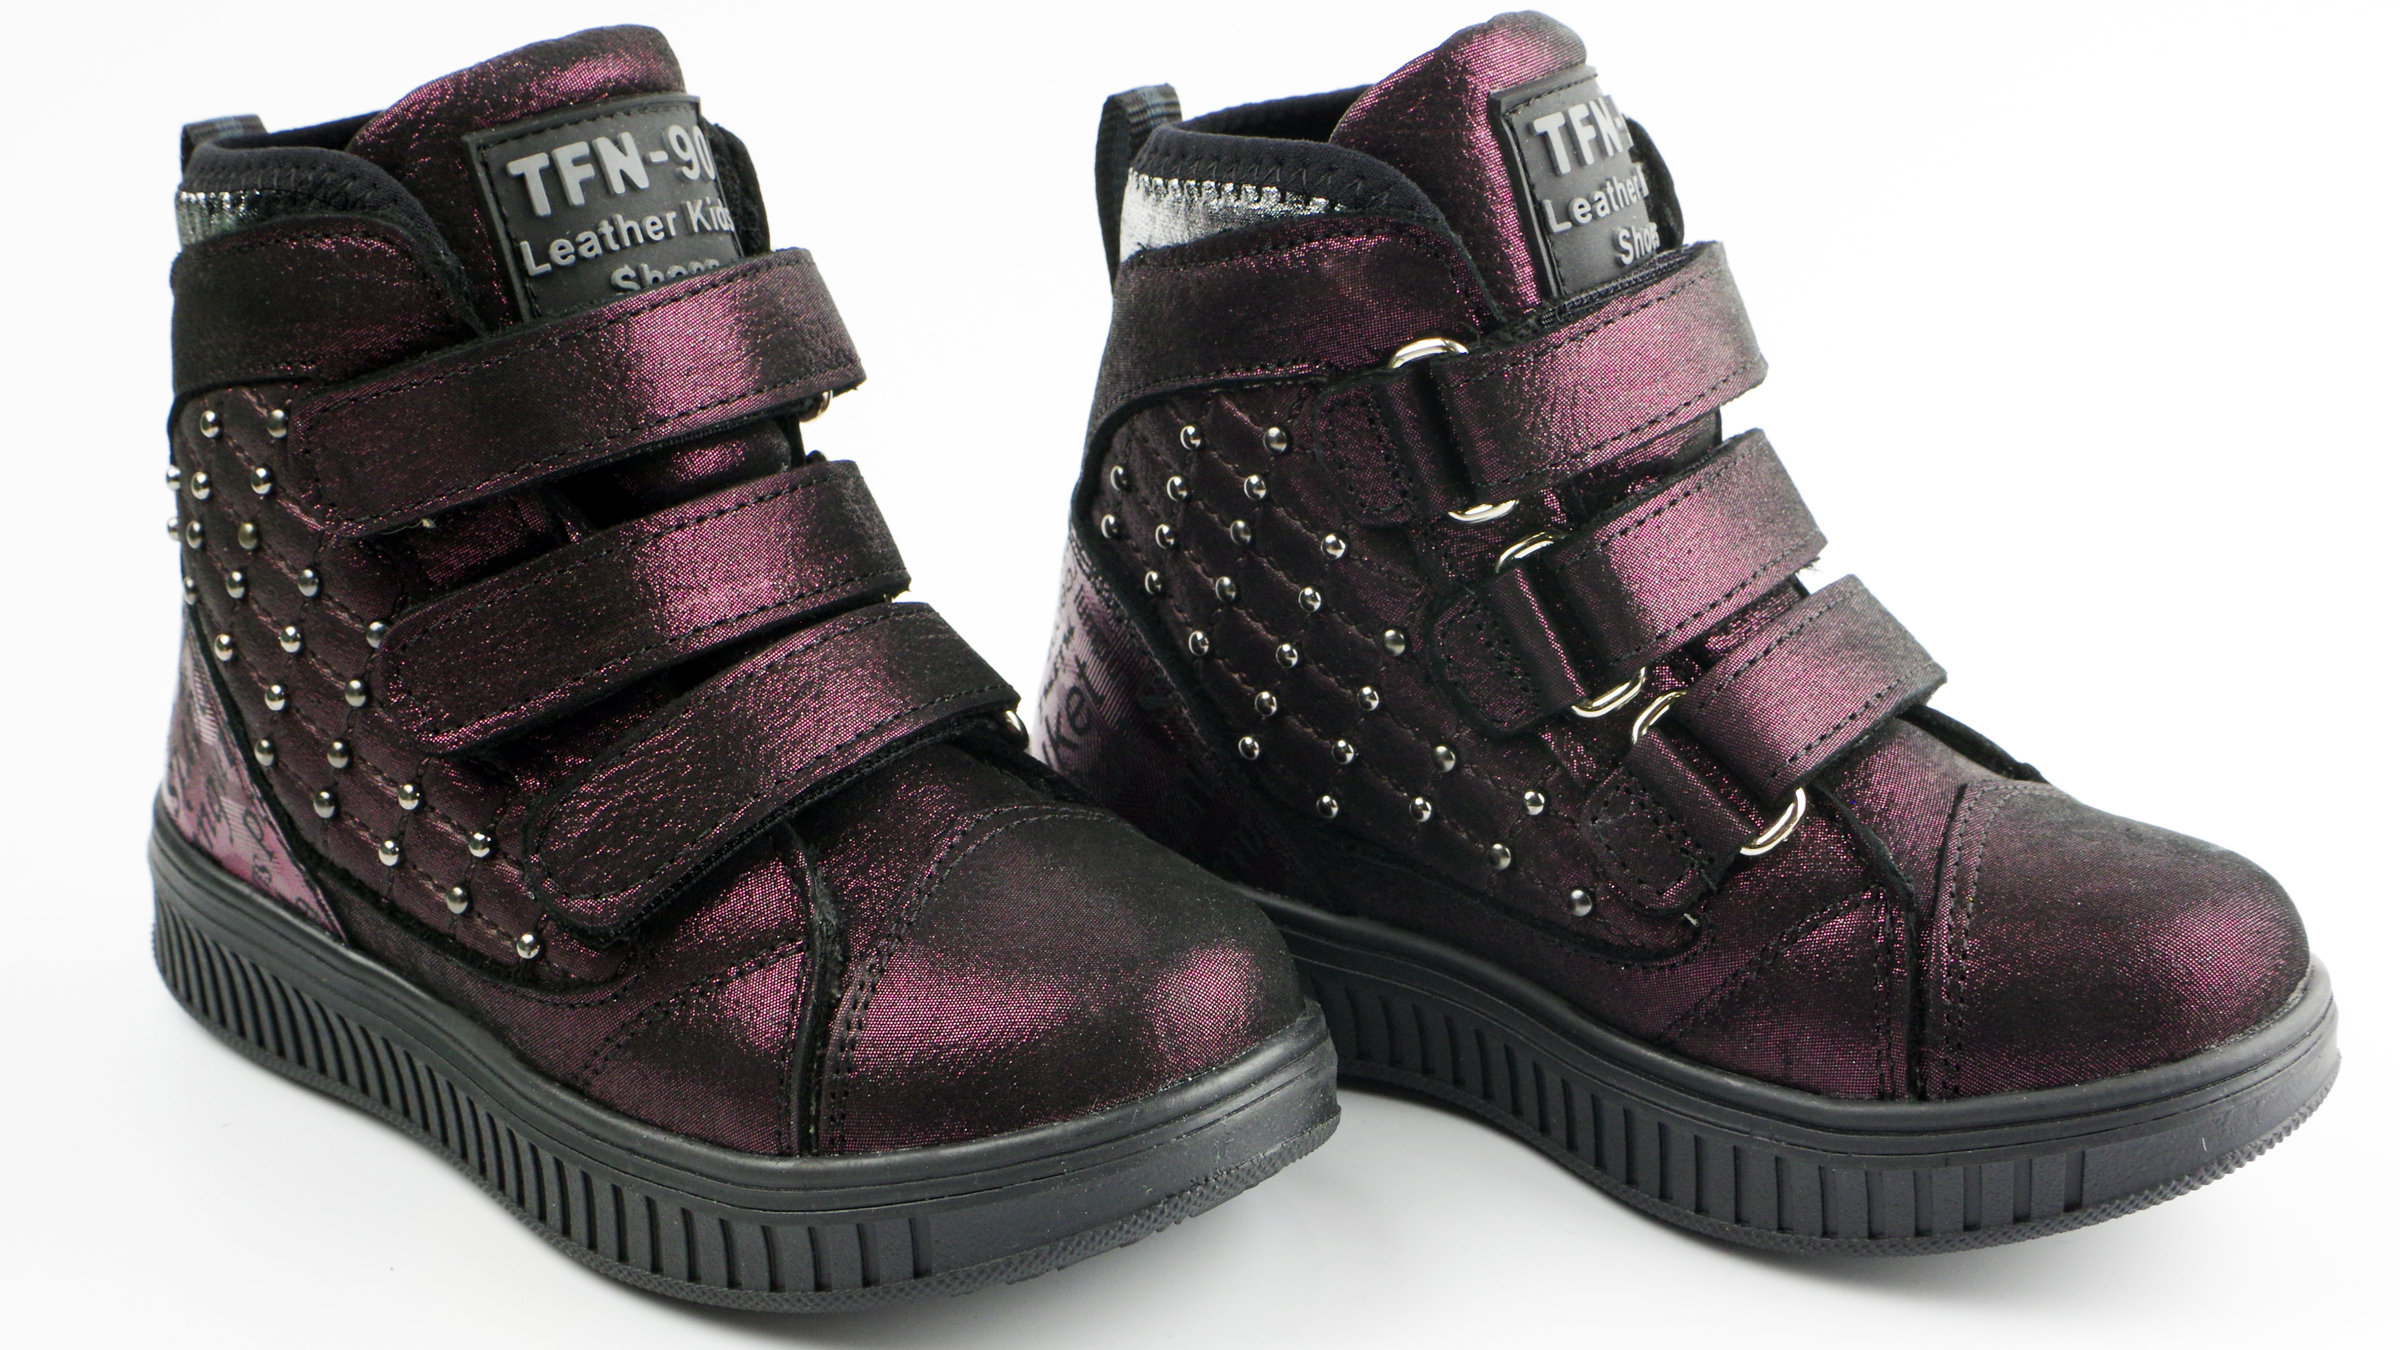 Демисезонные ботинки (2141) материал Натуральная кожа, цвет Фиолетовый  для девочки 26-30 размеры – Sole Kids. Фото 4